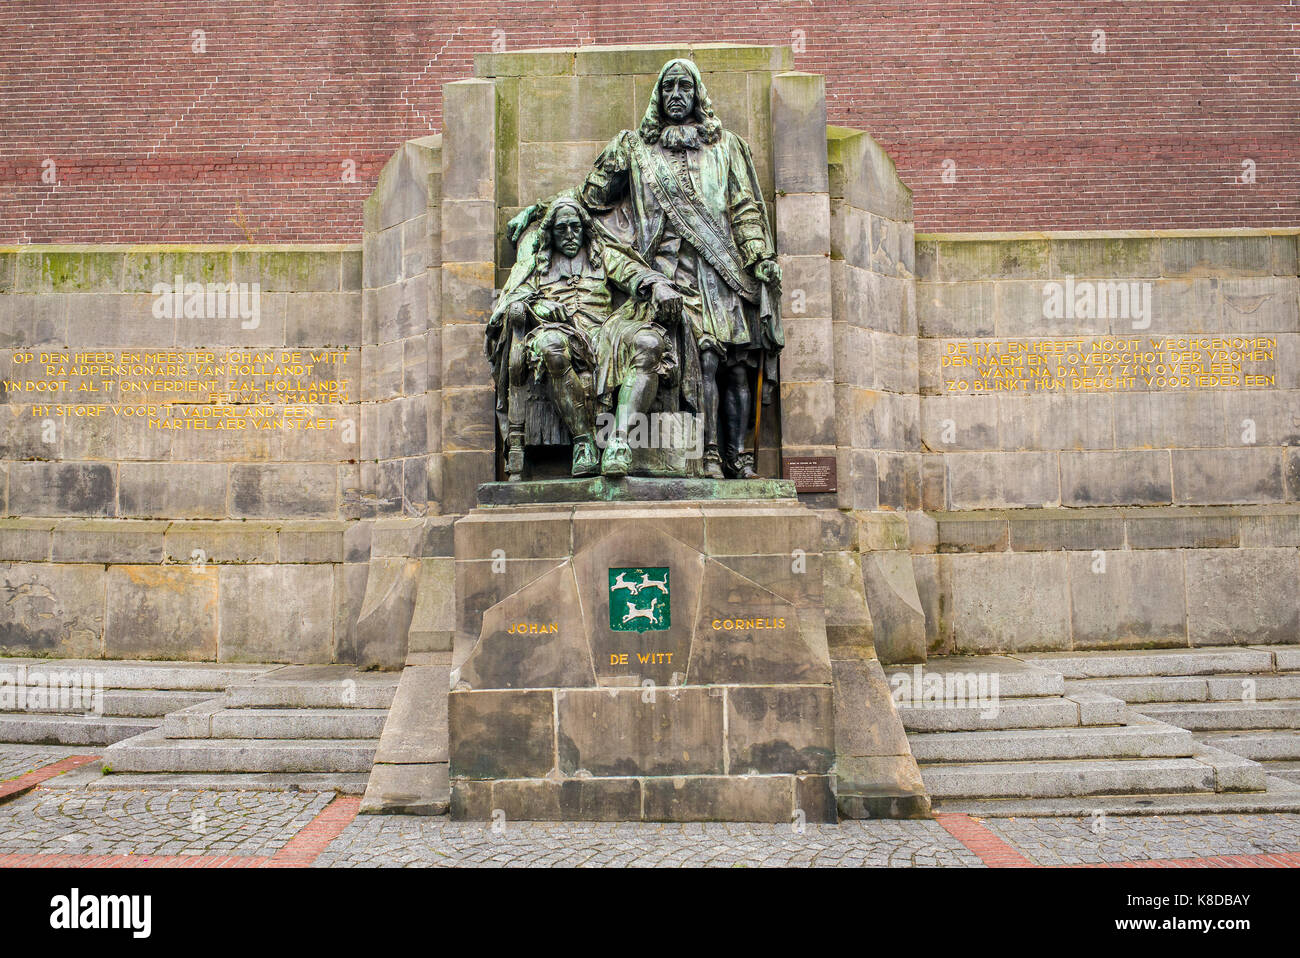 Estatua de Johan y Cornelis de Witt en Dordrecht en los Países Bajos Foto de stock